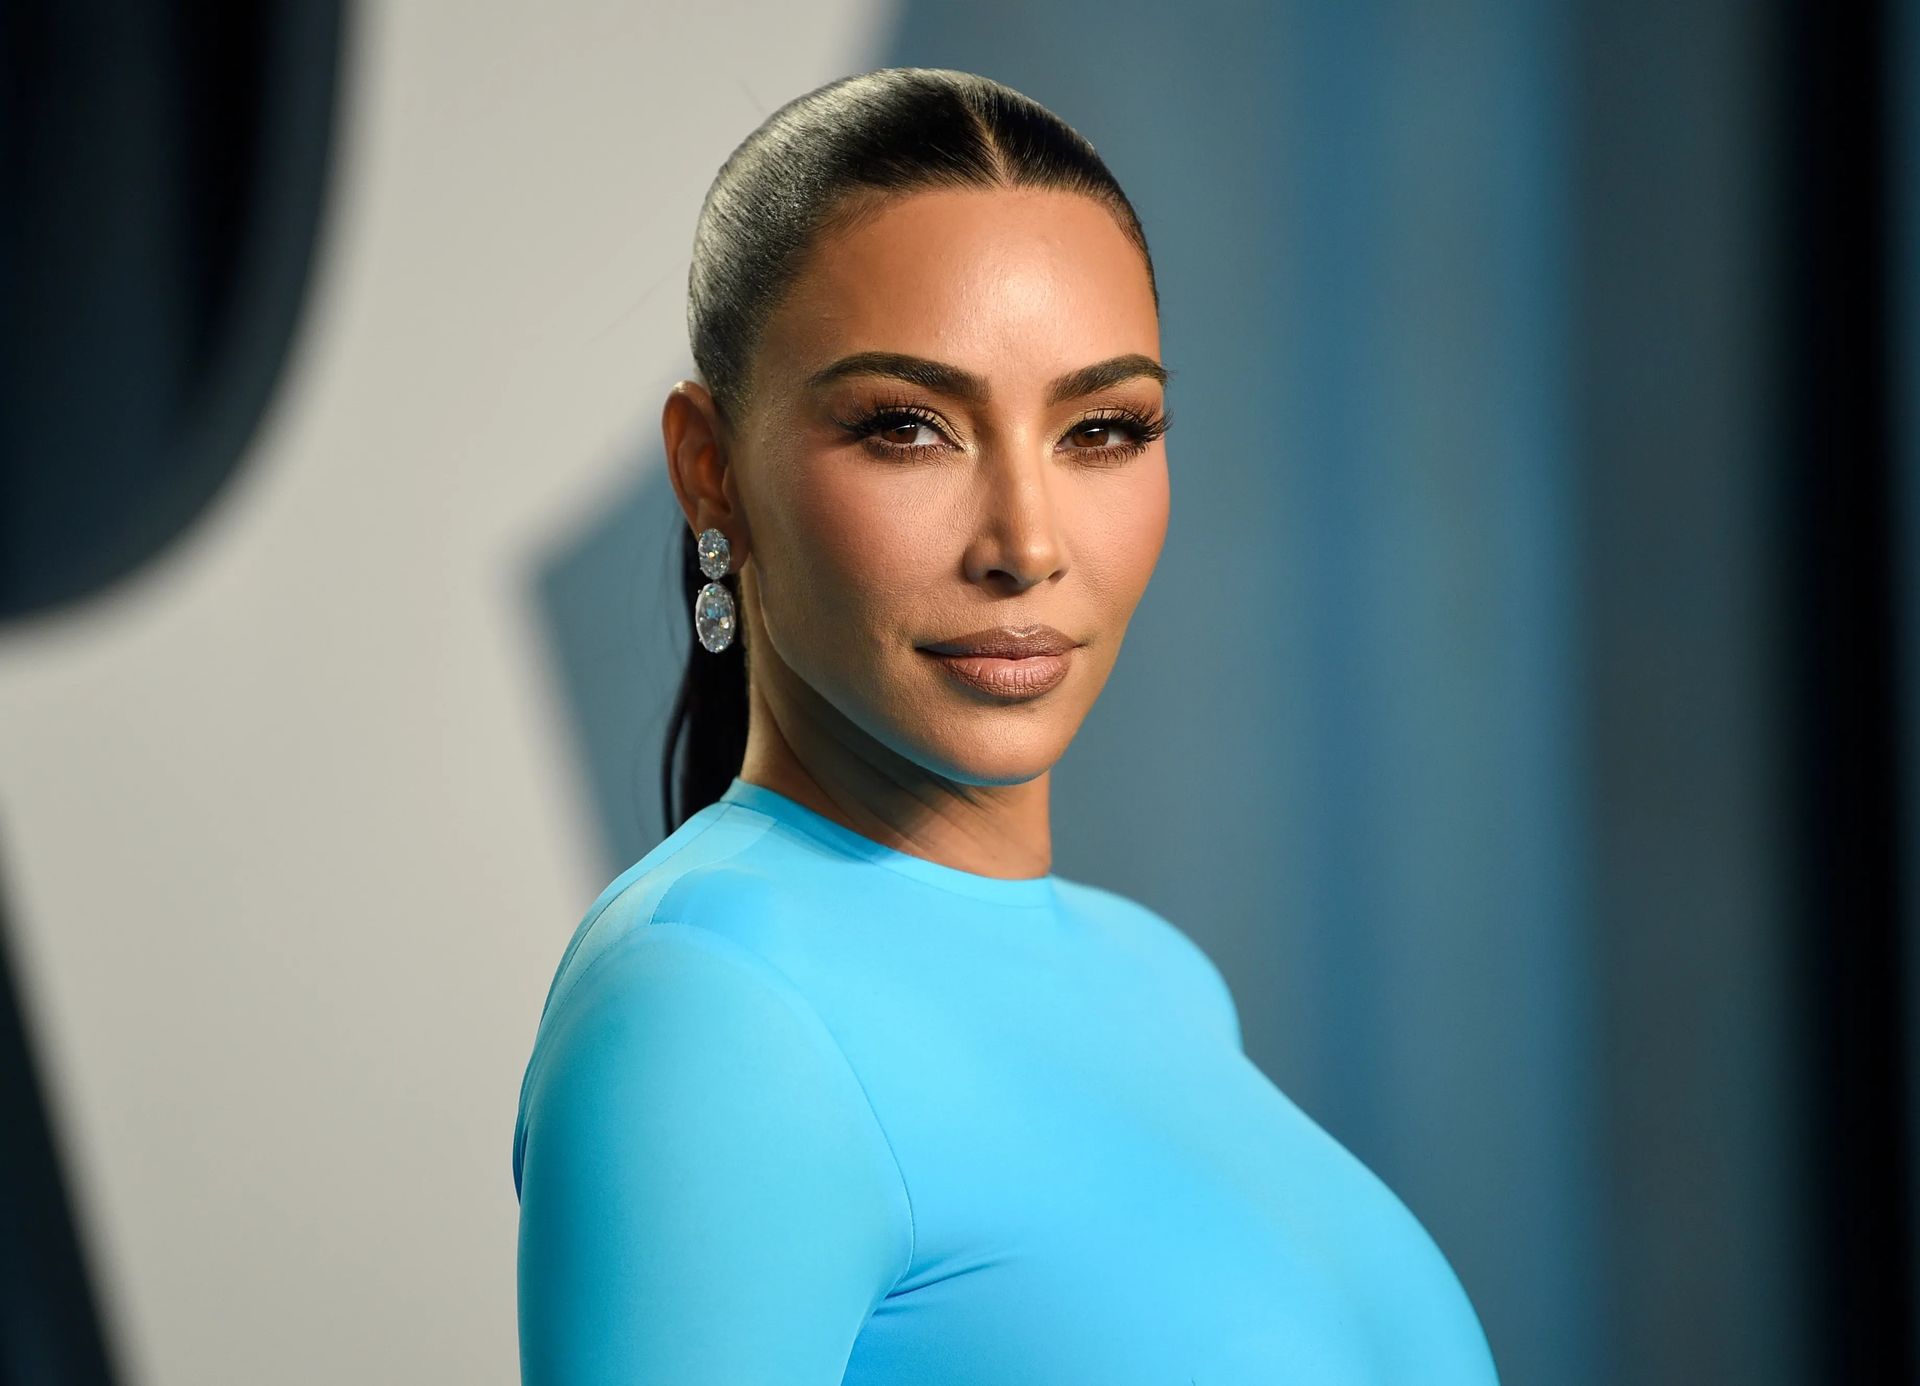 Post de criptomoeda de Kim Kardashian: A celebridade promoveu o EthereumMax e entrou em problemas federais